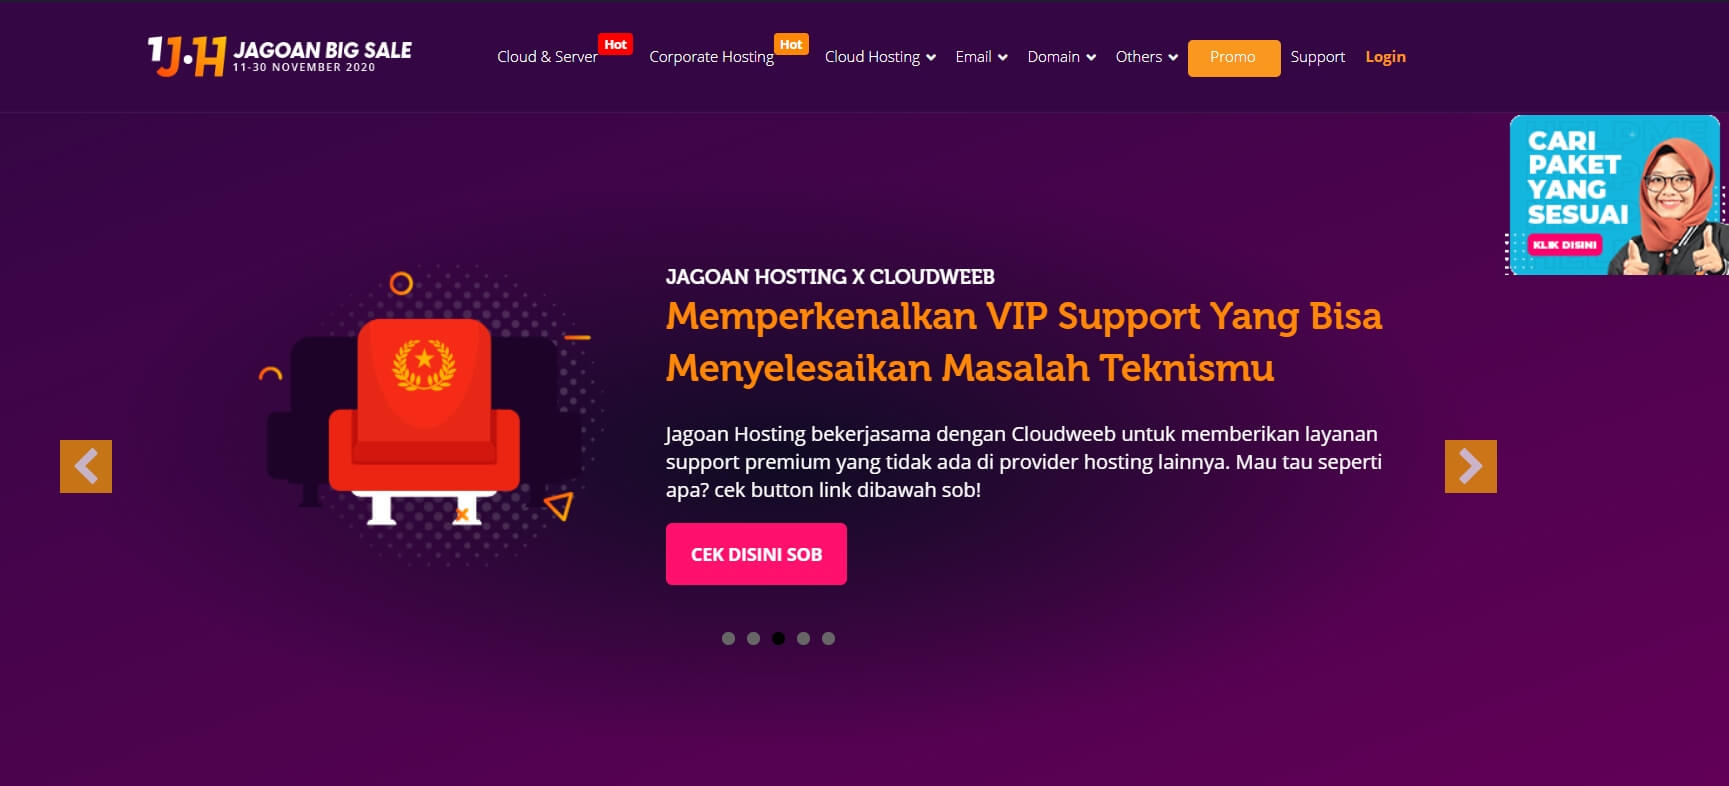 tampilan website jagoan hosting